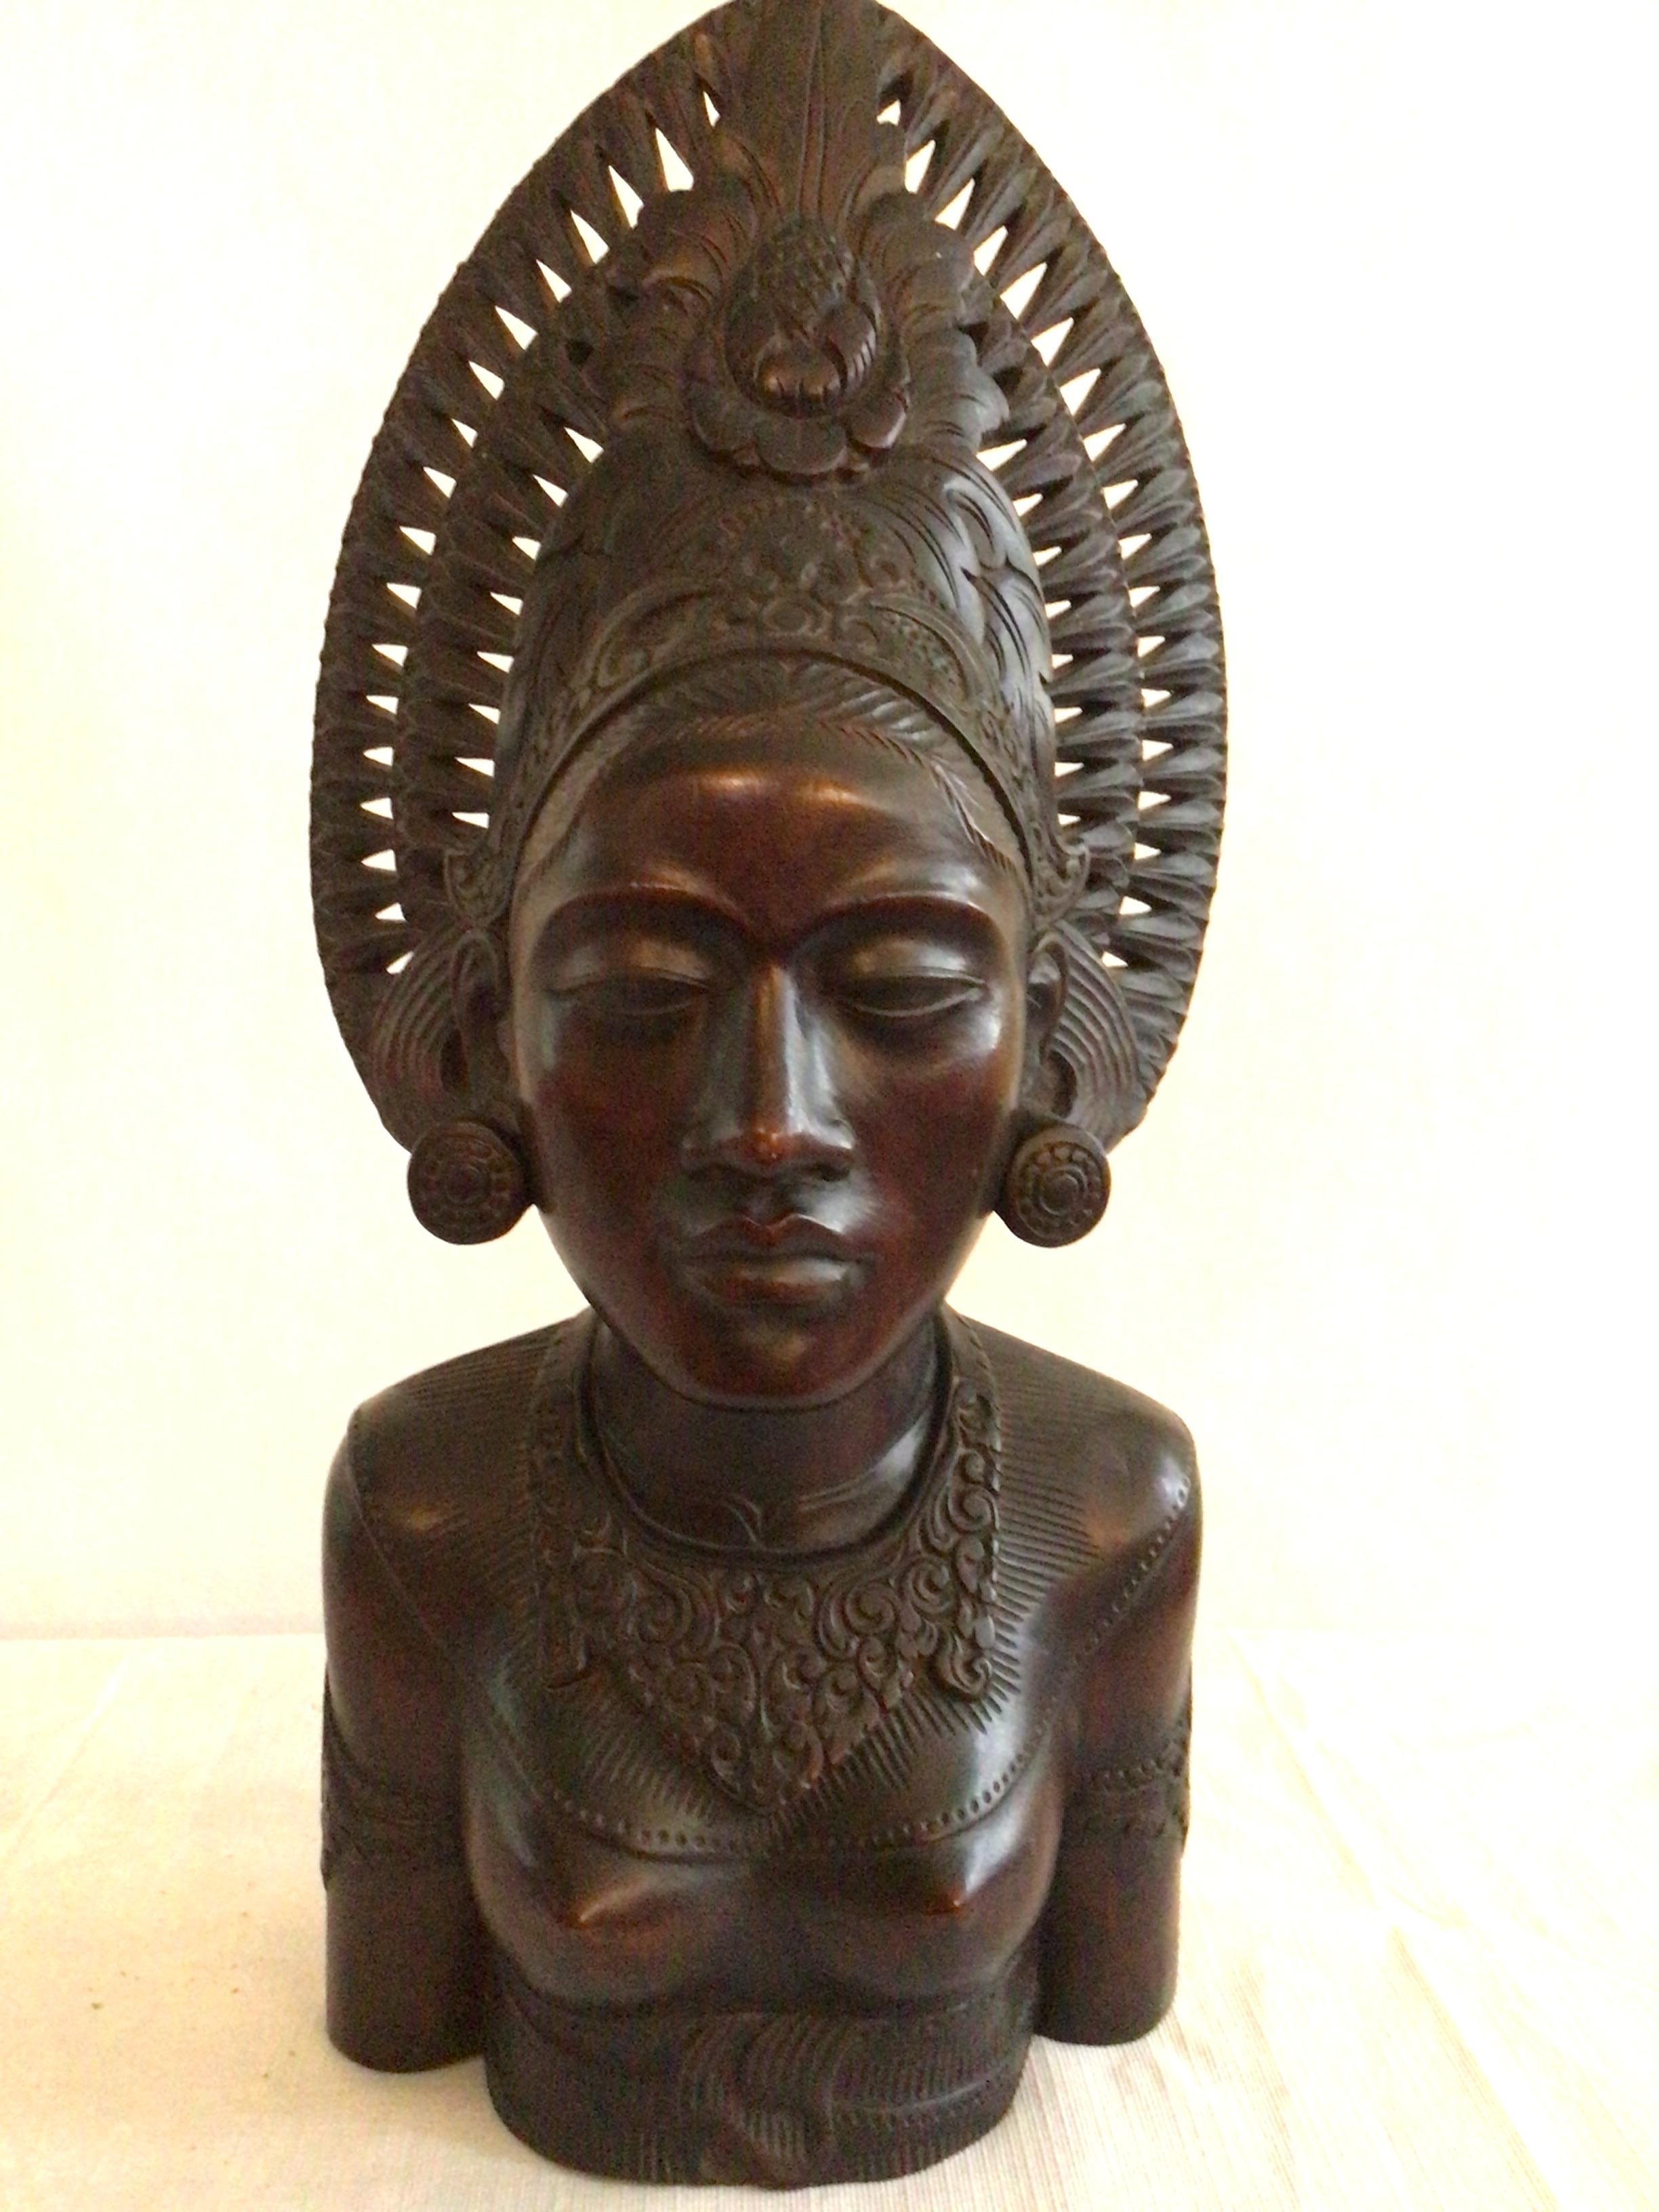 Diese fein geschnitzte Holzstatue einer thailändischen Frau aus den 1950er Jahren ist von jeder Seite exquisit. Ein aufwendiges Kopfschmuck mit geschnitzten Öffnungen verleiht dem Stück Leichtigkeit. Das Haar ist auf der Rückseite mit einer floralen